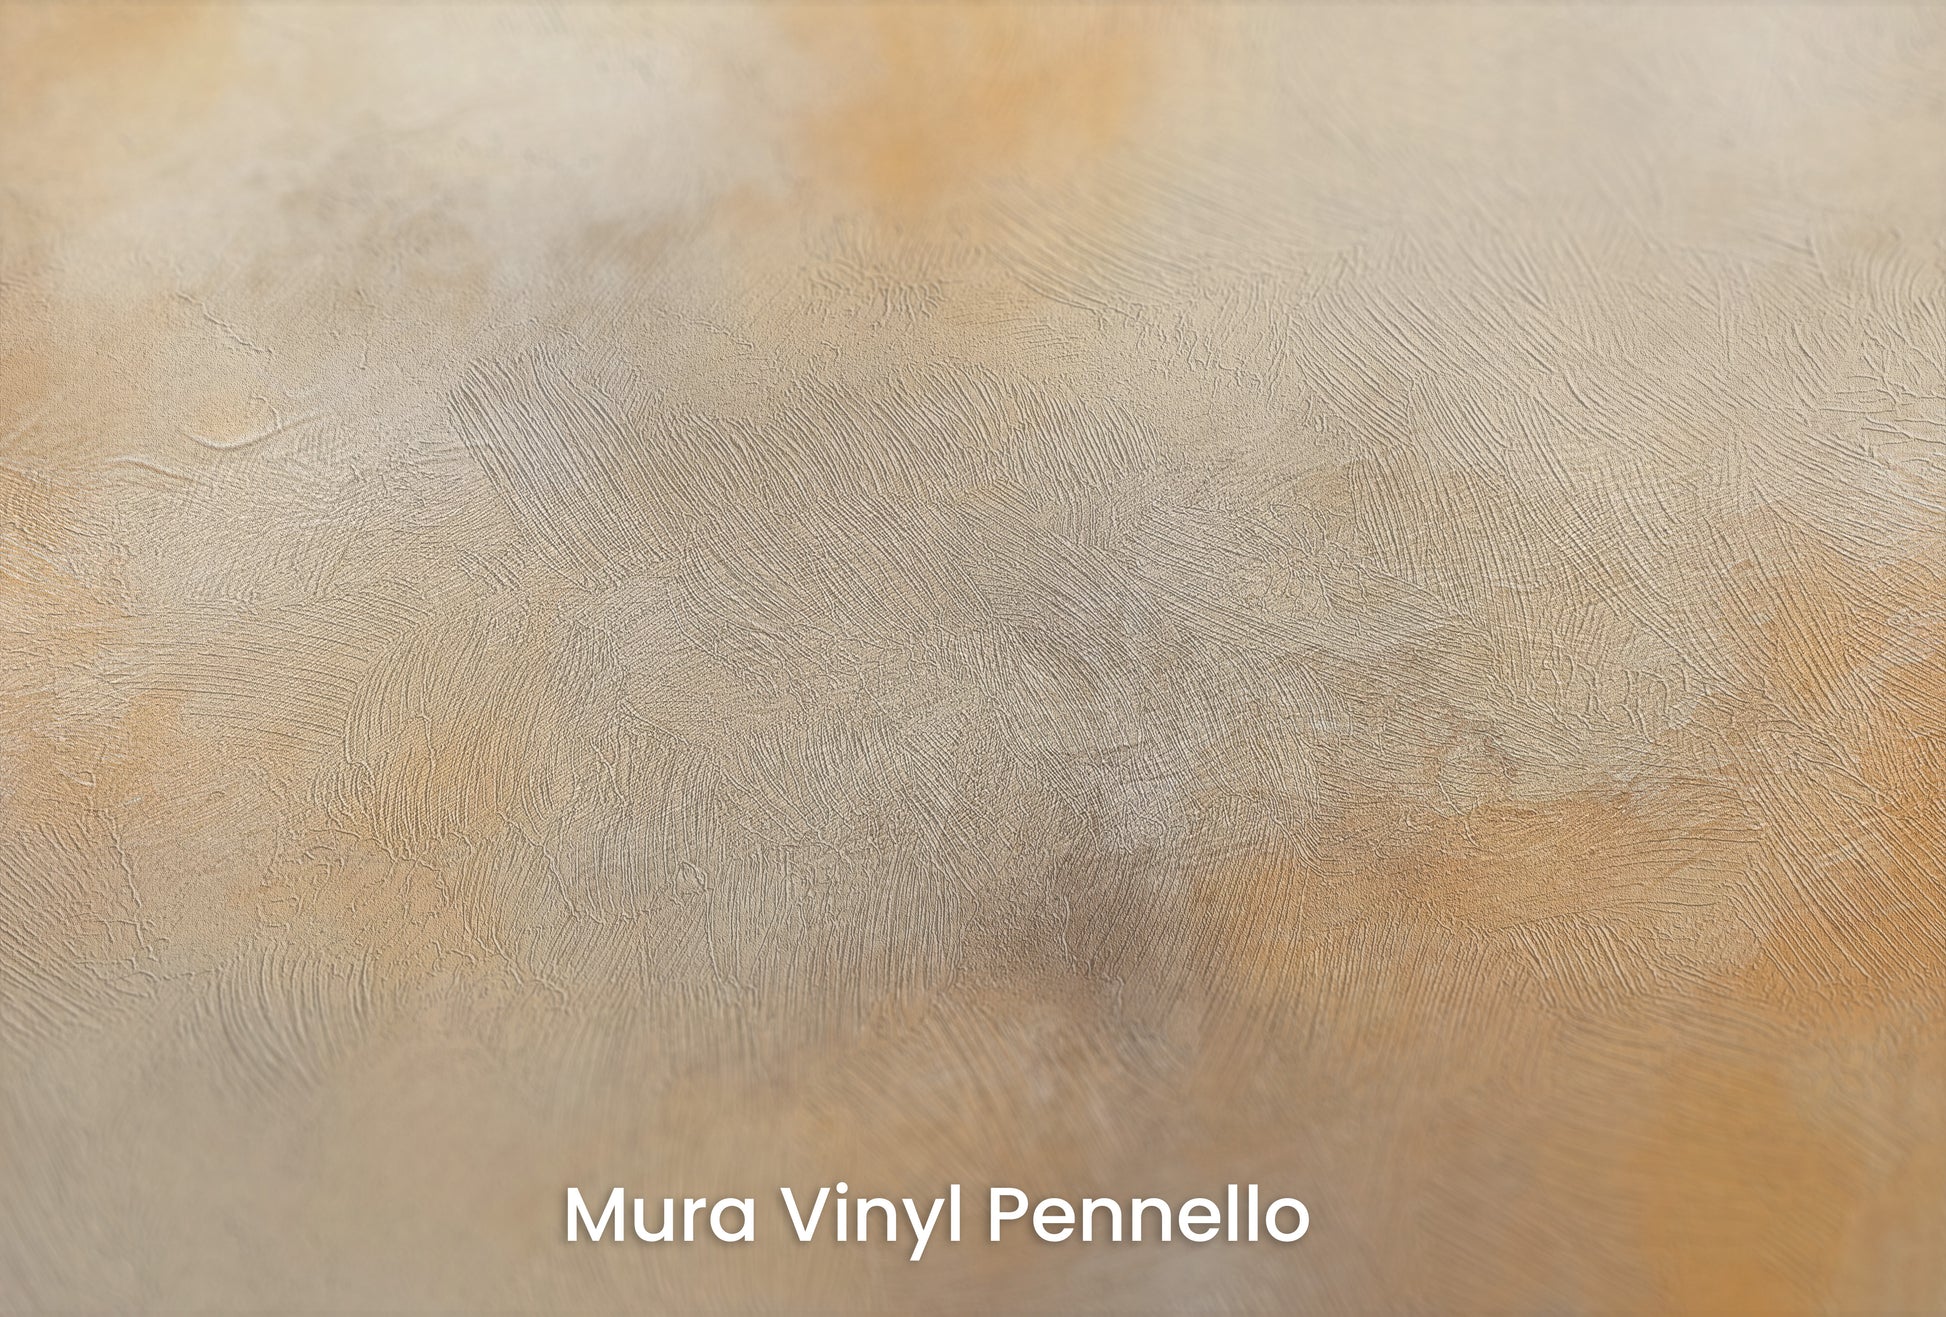 Zbliżenie na artystyczną fototapetę o nazwie WARMTH OF THE MORNING MIST na podłożu Mura Vinyl Pennello - faktura pociągnięć pędzla malarskiego.